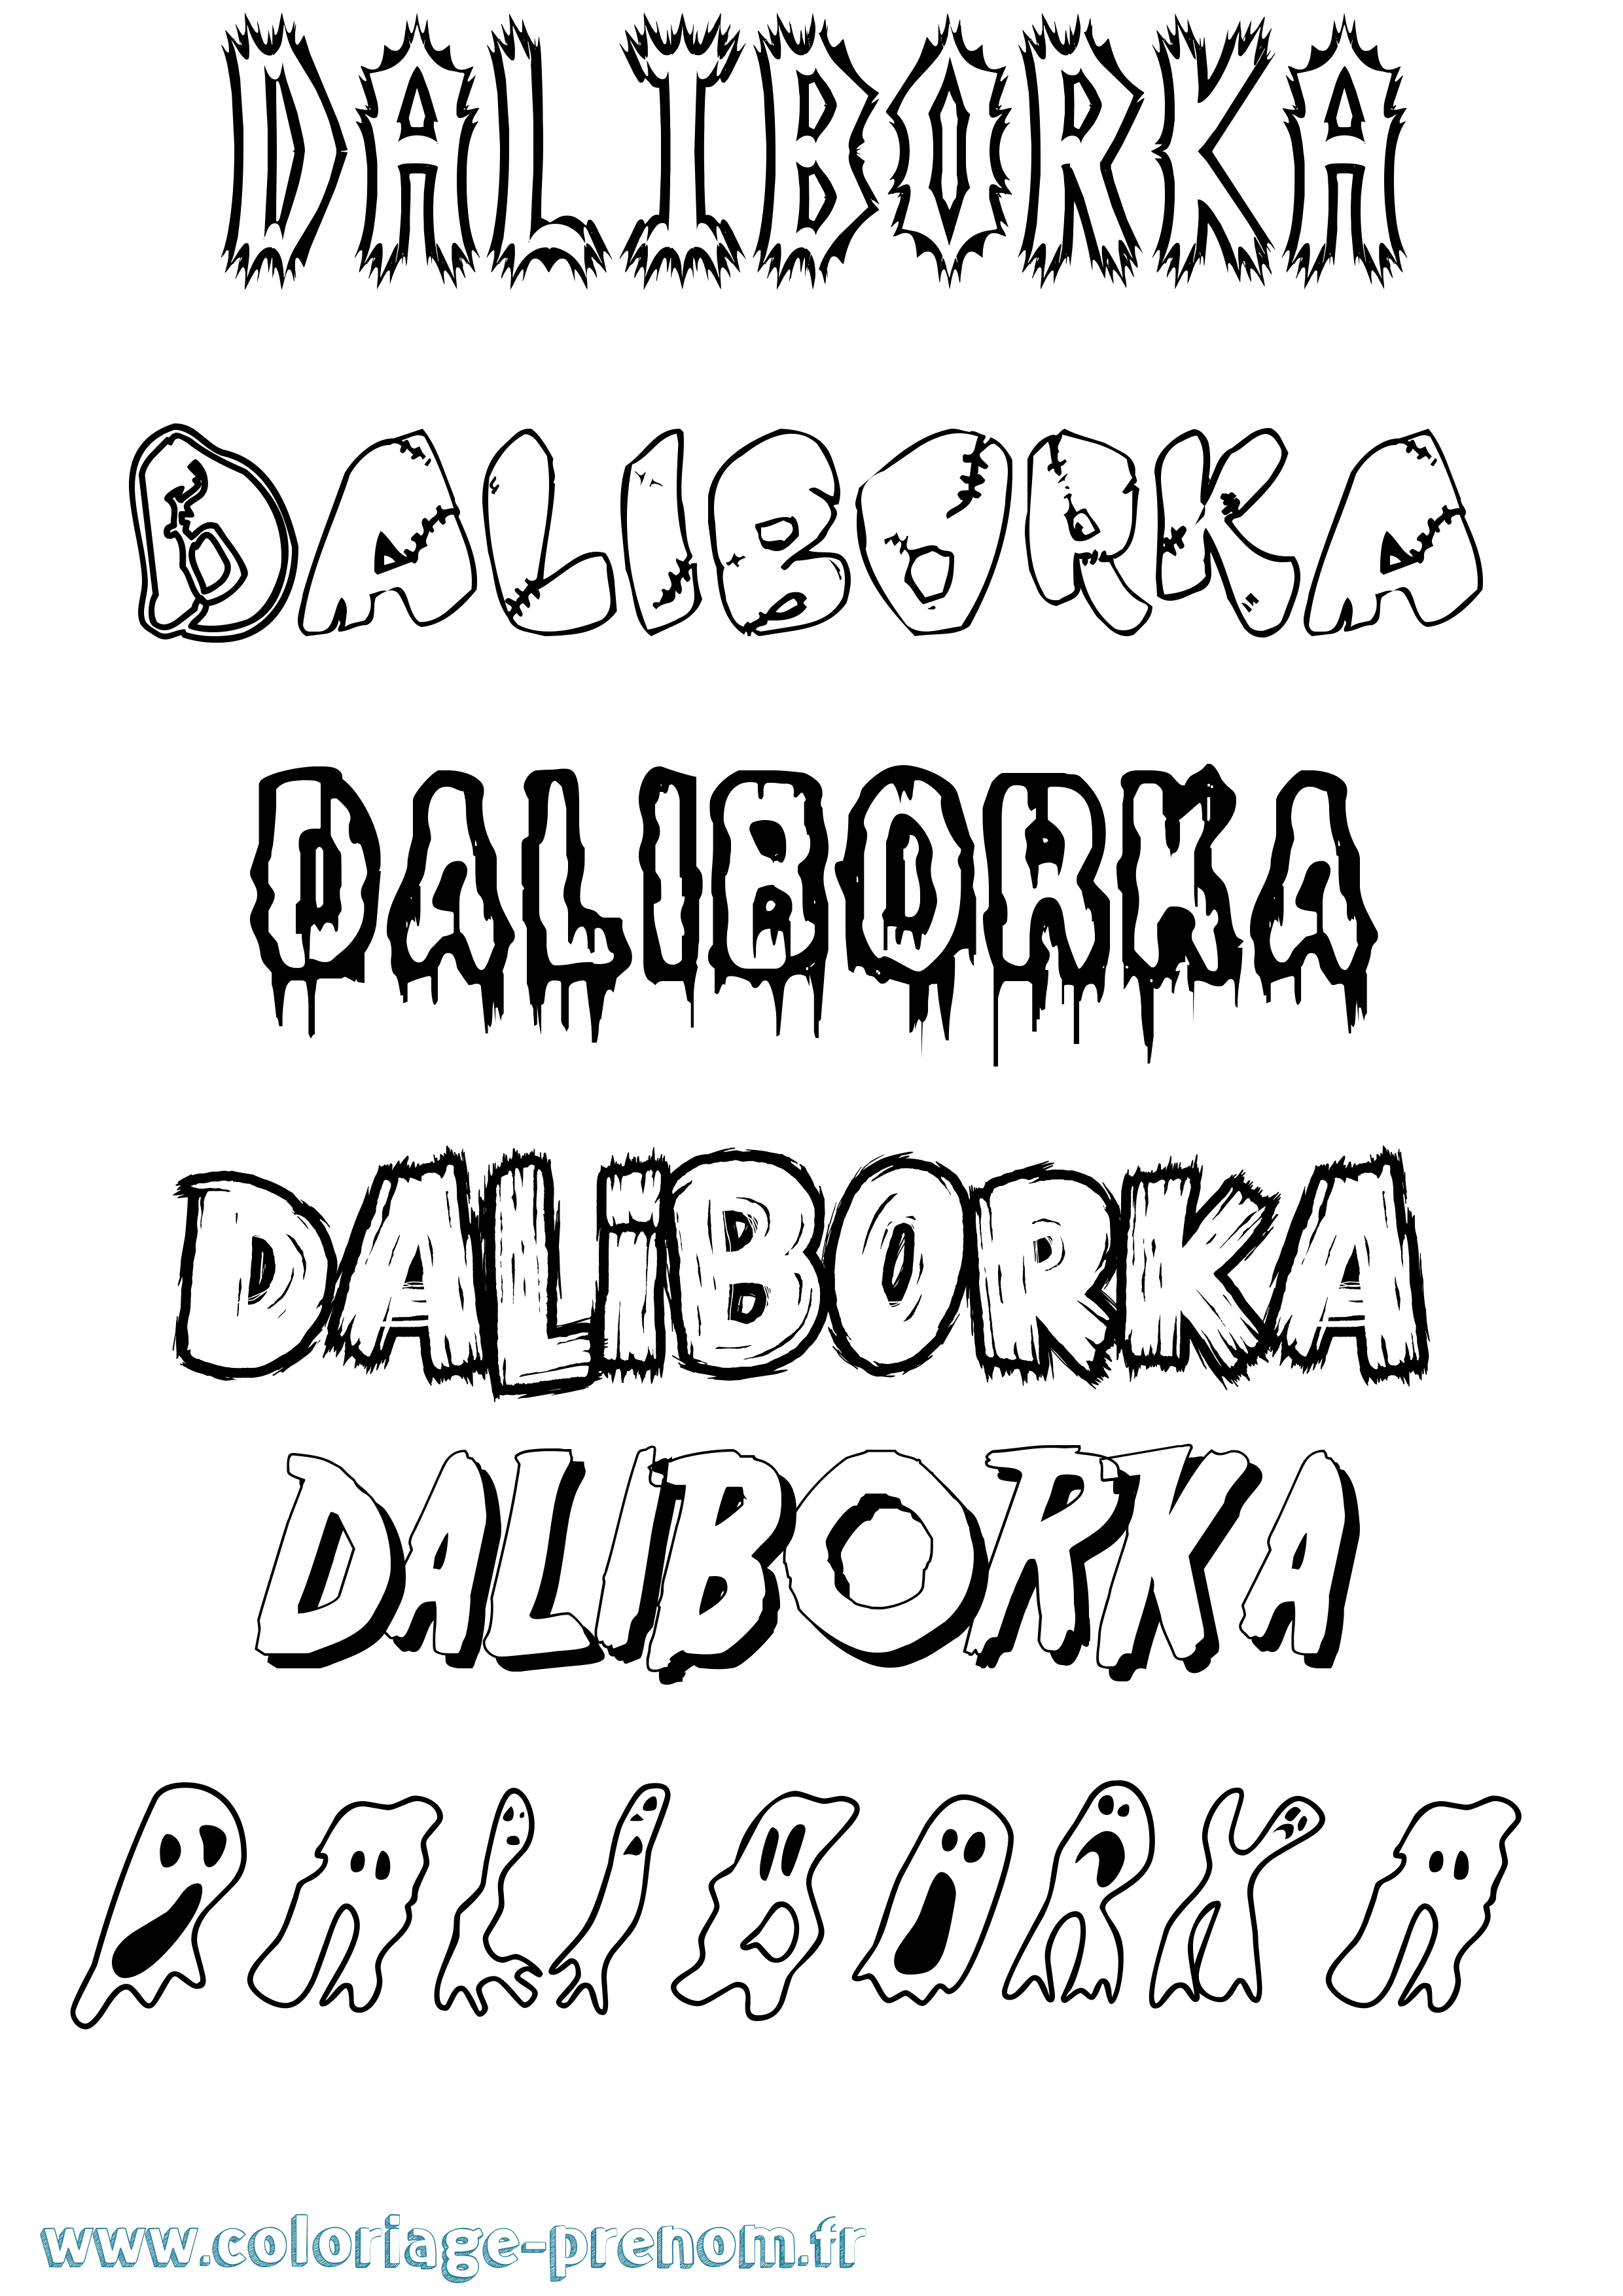 Coloriage prénom Daliborka Frisson